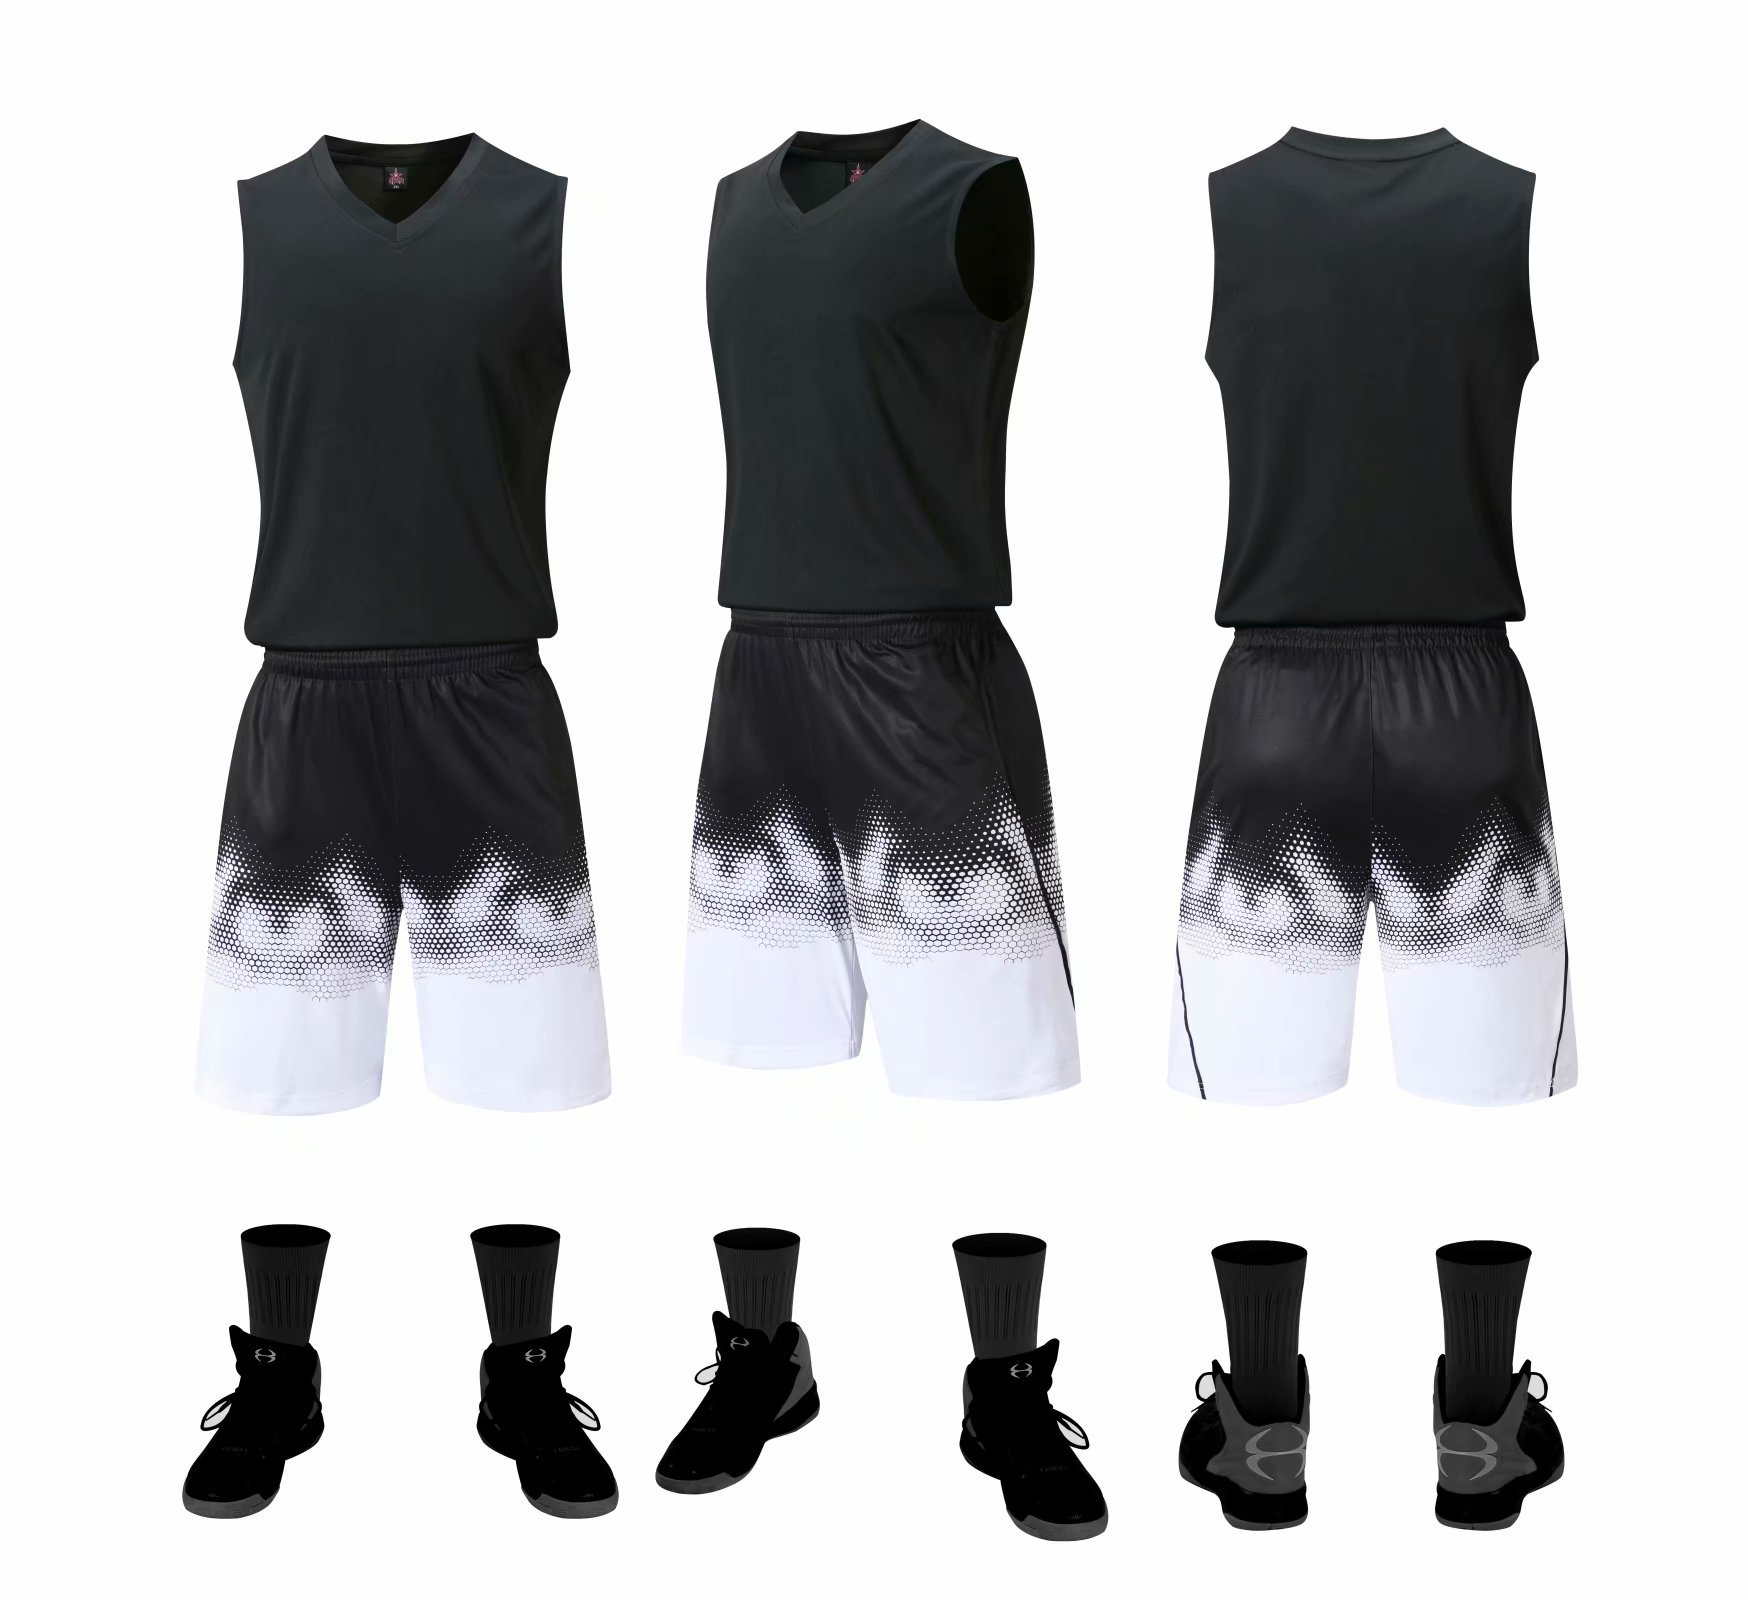 Bộ quần áo bóng rổ trơn Đen - Bộ quần áo bóng rổ để in áo đội- Quần áo bóng rổ không logo - Mẫu 3-2021